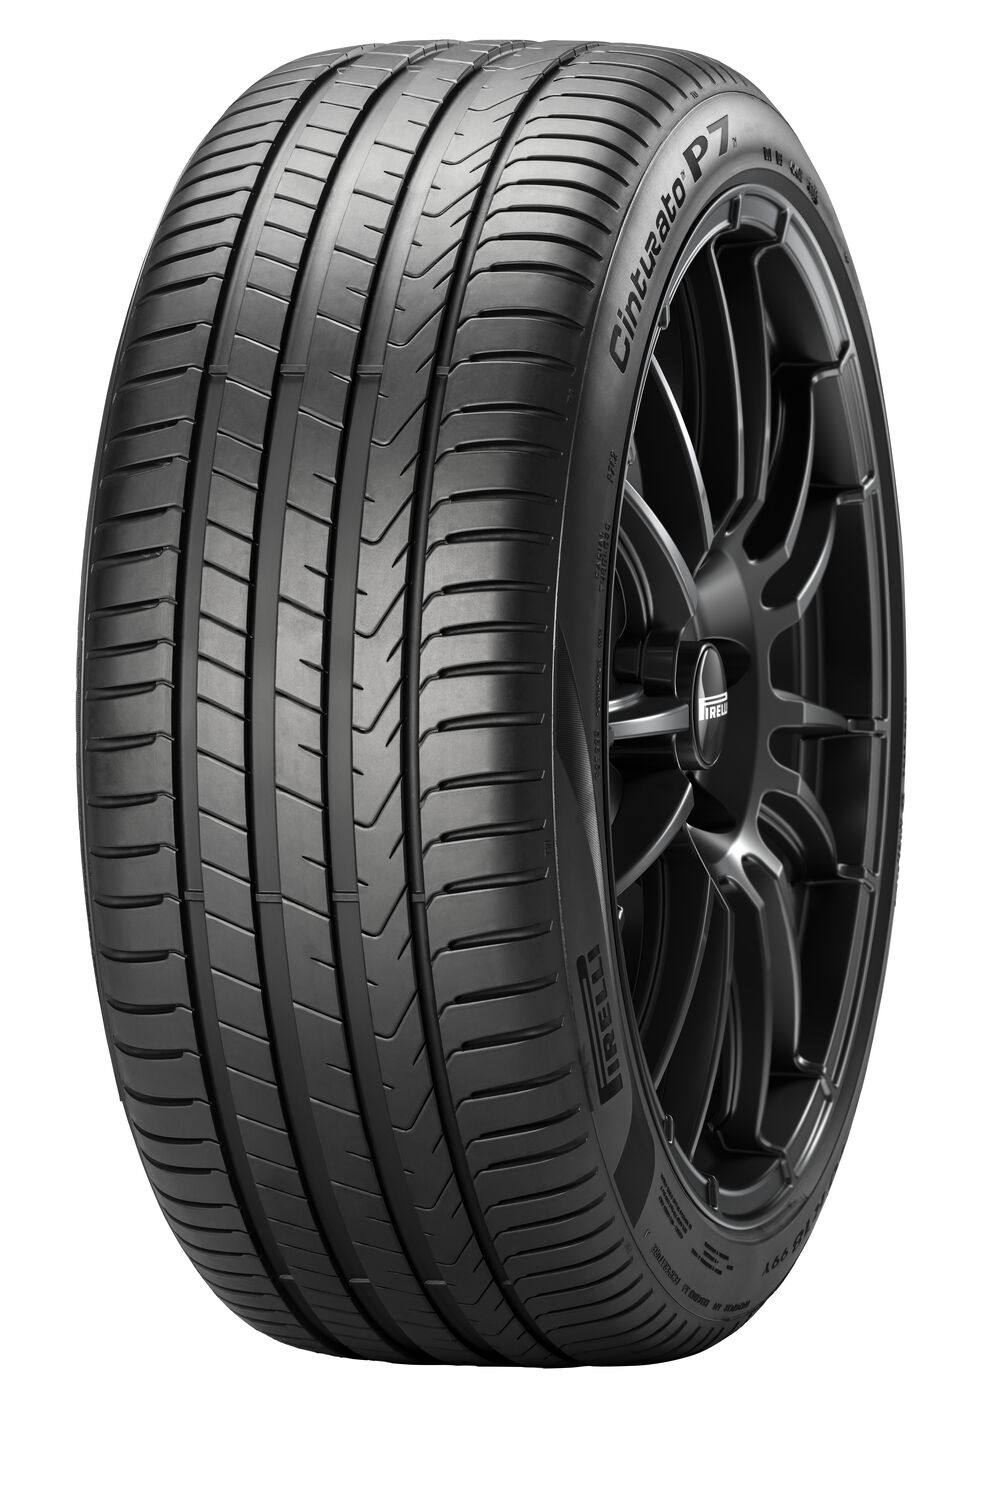 Gomme Nuove Pirelli 225/50 R17 98Y P7 CINTURATO P7C2 XL pneumatici nuovi Estivo